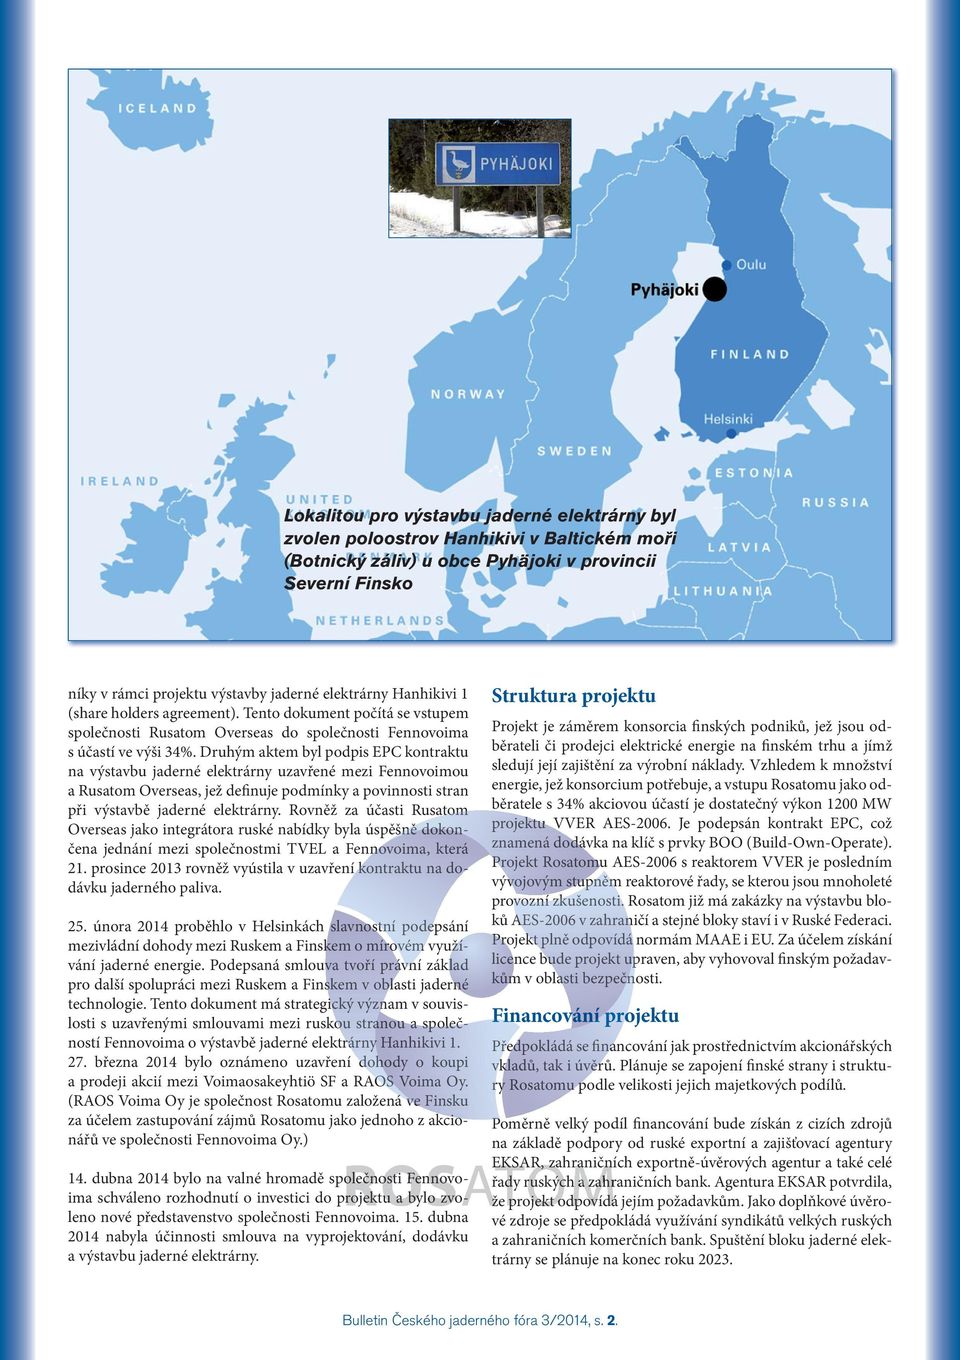 Podepsaná smlouva tvoří právní základ pro další spolupráci mezi Ruskem a Finskem v oblasti jaderné technologie.